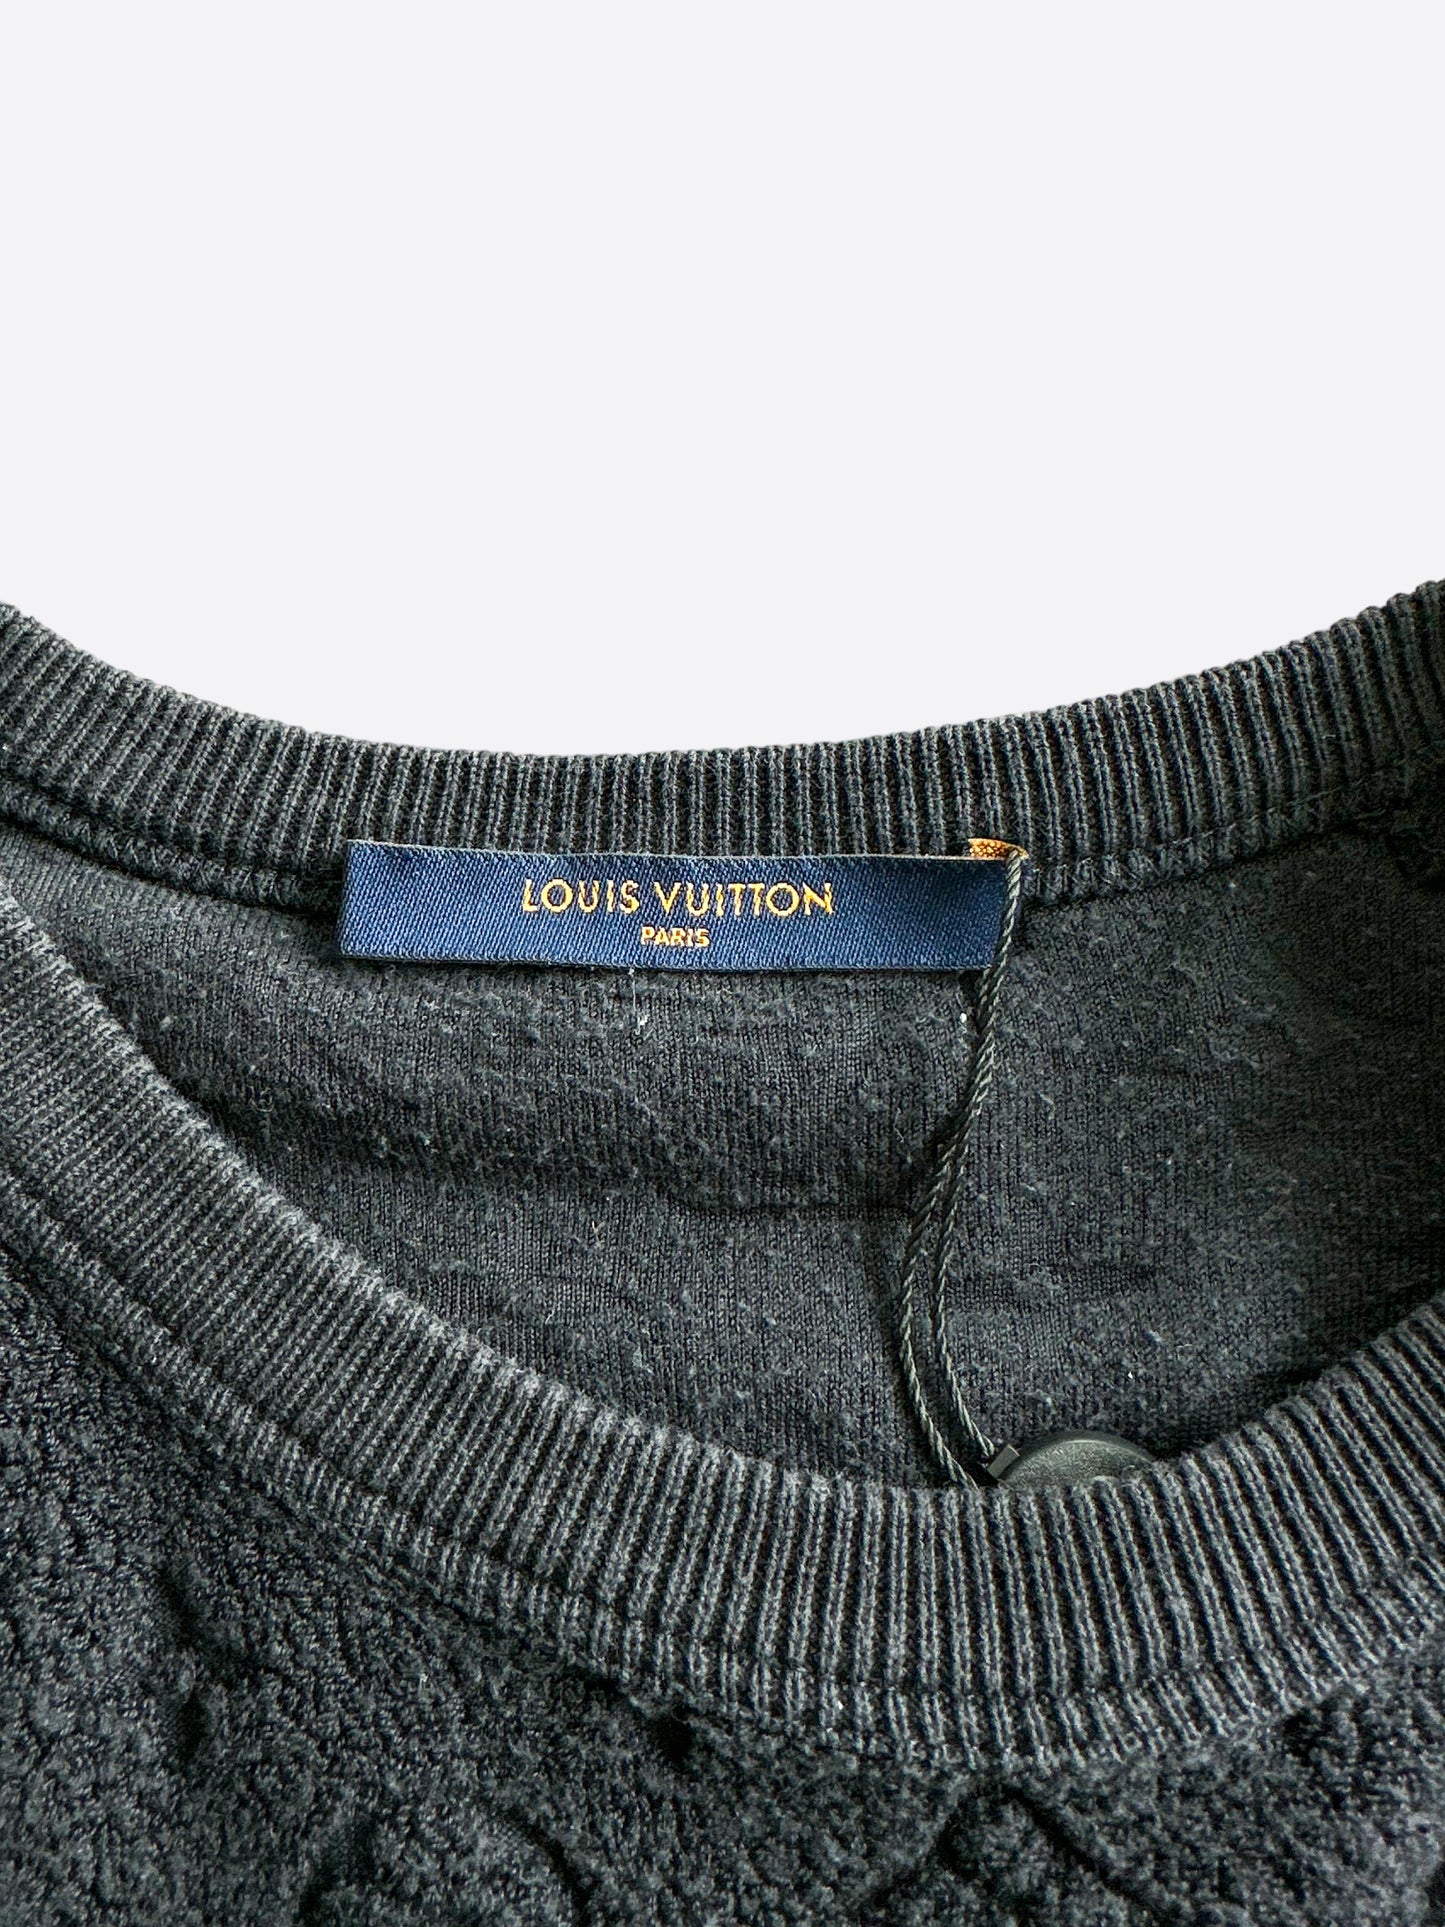 LOUIS VUITTON LOUIS VUITTON Knit wear t-shirt Short sleeve wool